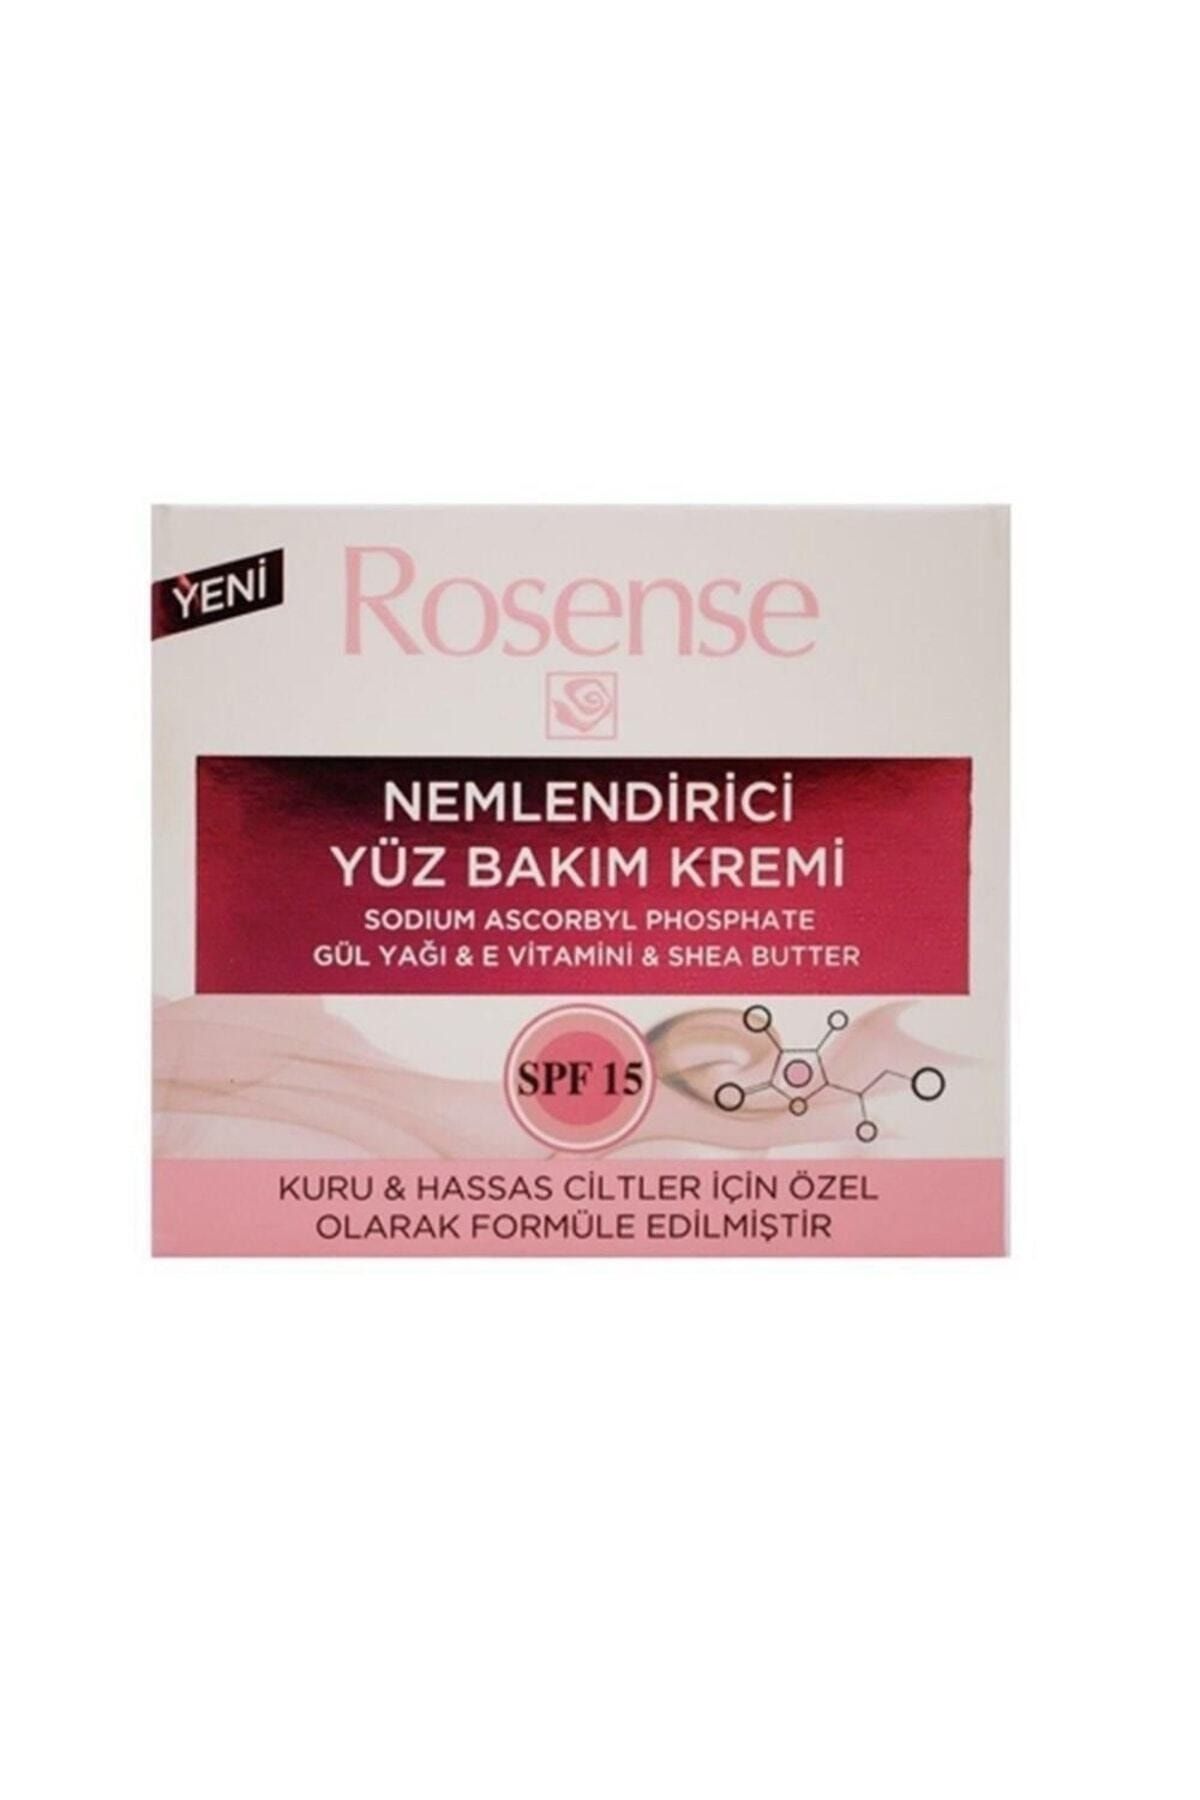 Rosense ® Nemlendirici Yüz Bakım Kremi (Kuru & Hassas Cilt) - 50 ml